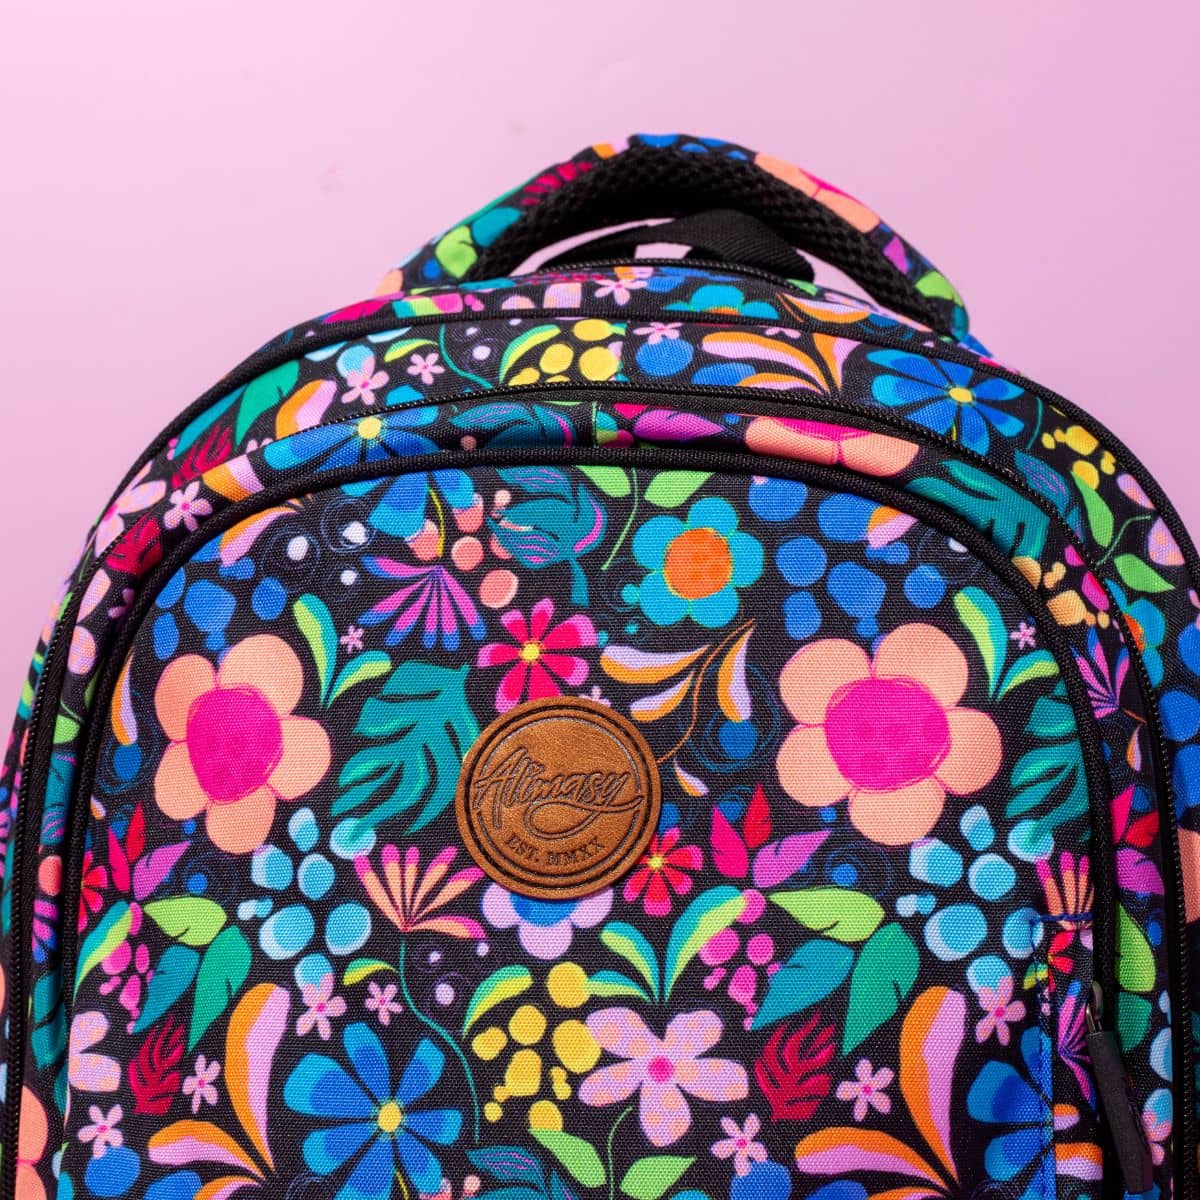 Alimasy Midsize Backpack - Kasey Rainbow - Wonderland